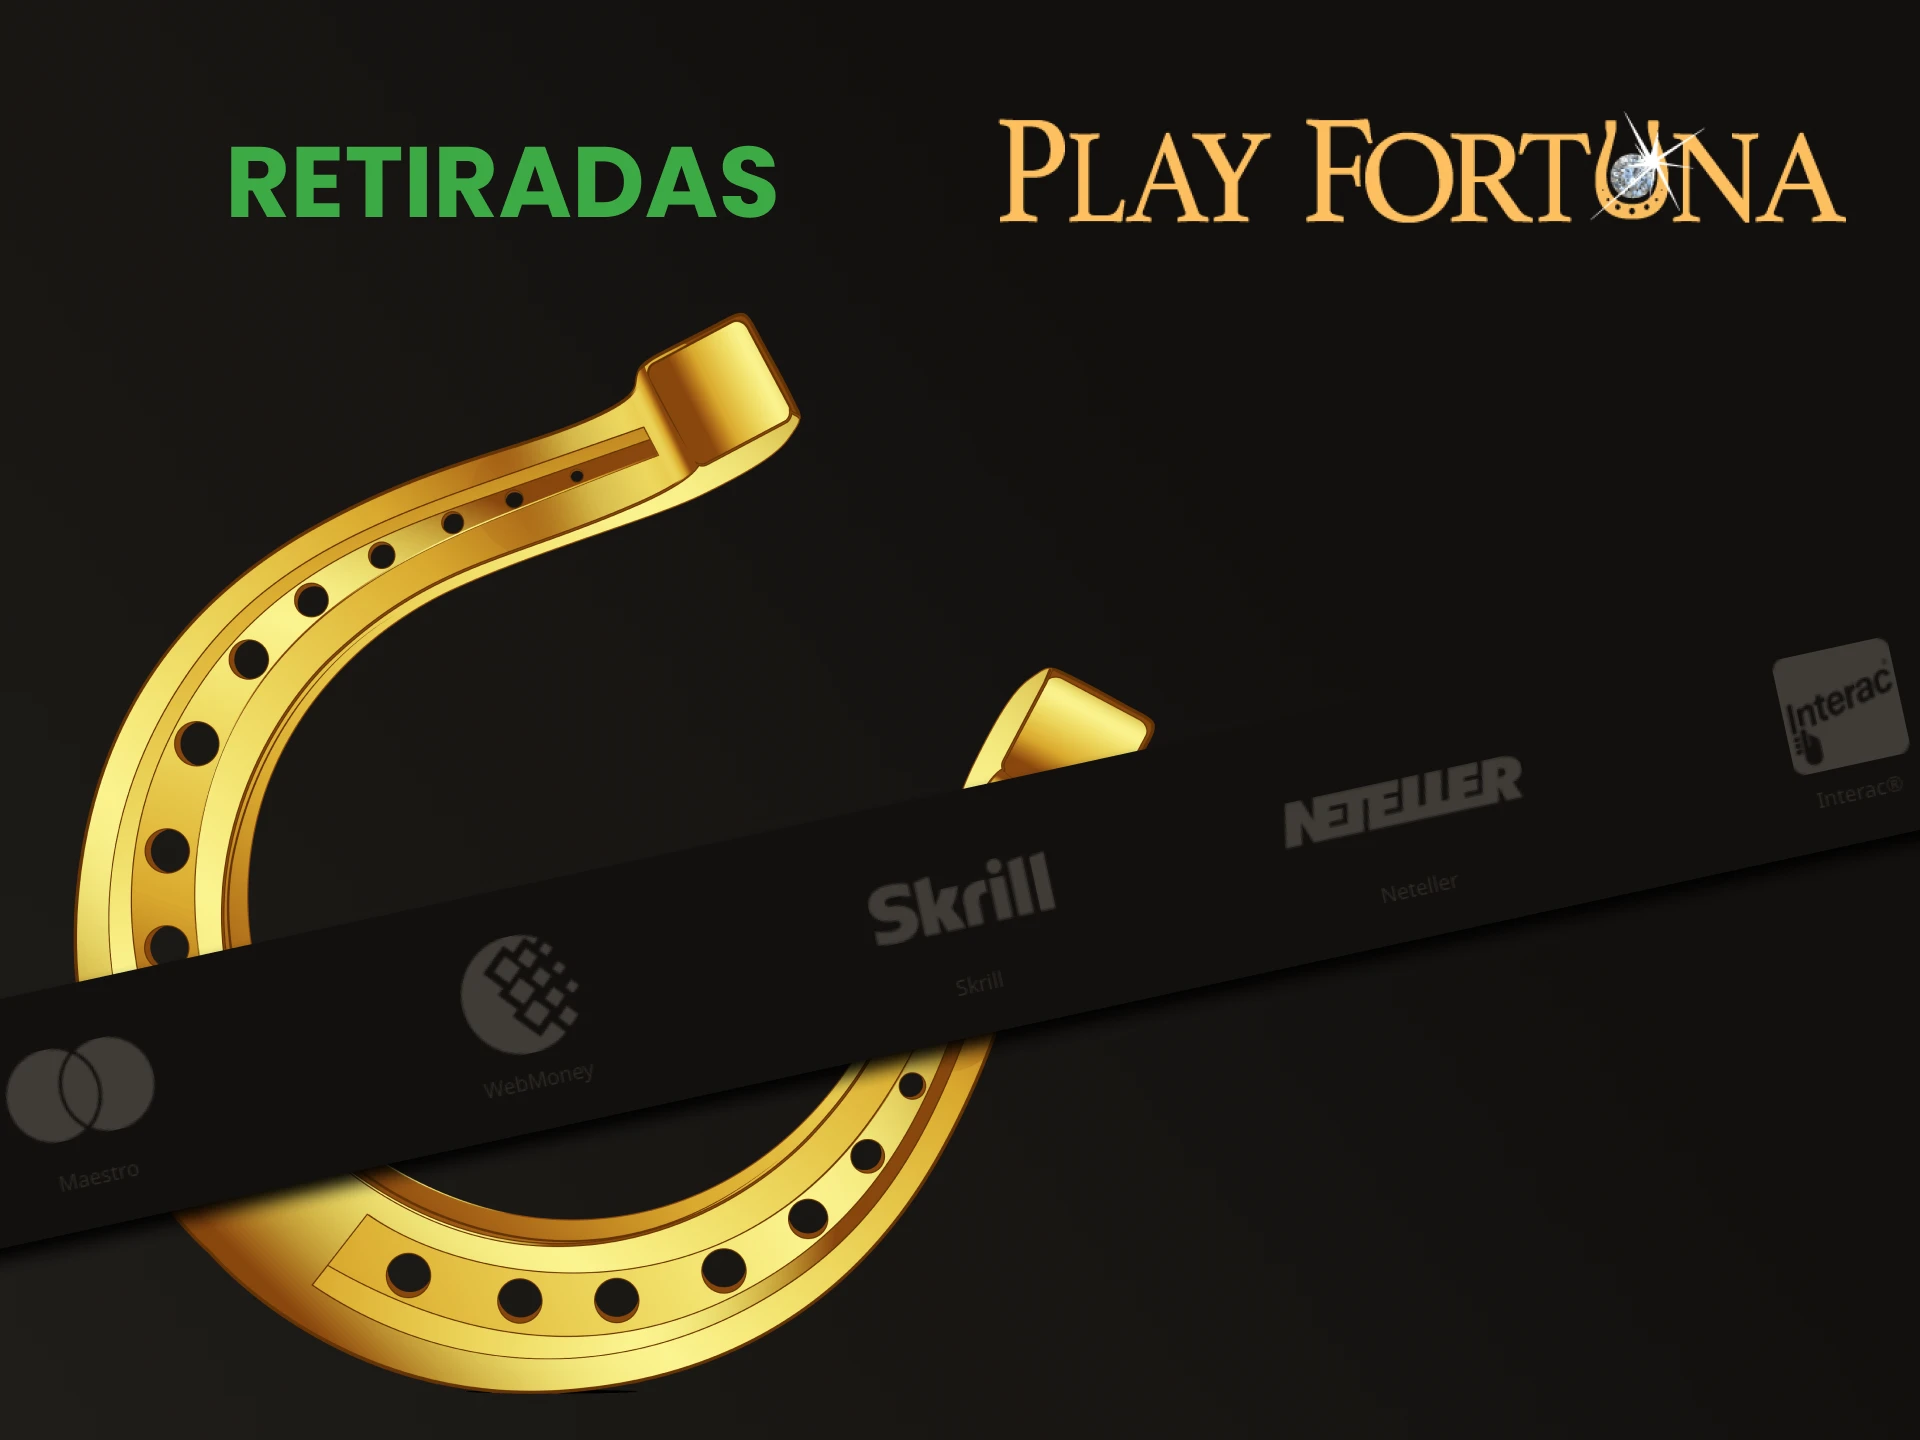 Play Fortuna possui um método de transação rápido.